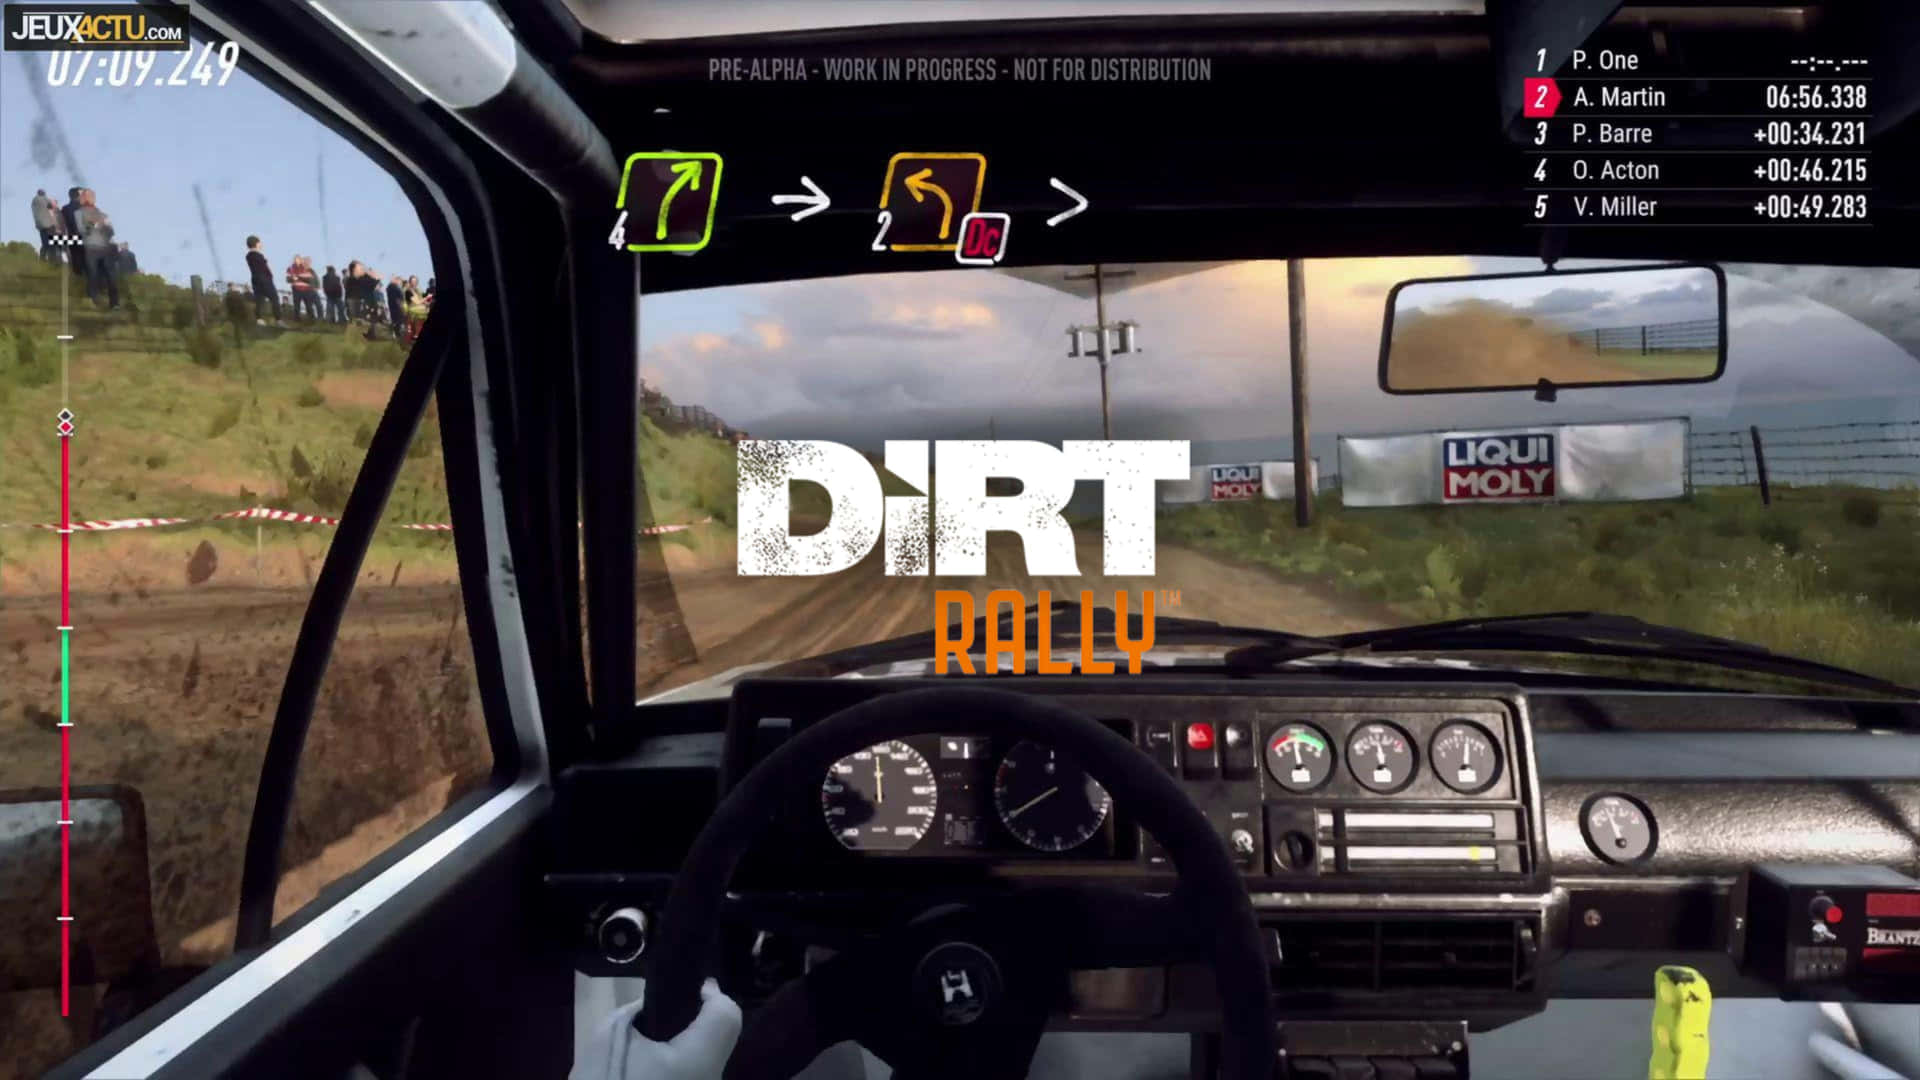 Körpå I Full Fart Med 4k Dirt Rally Som Bakgrundsbild På Datorn Eller Mobilen.